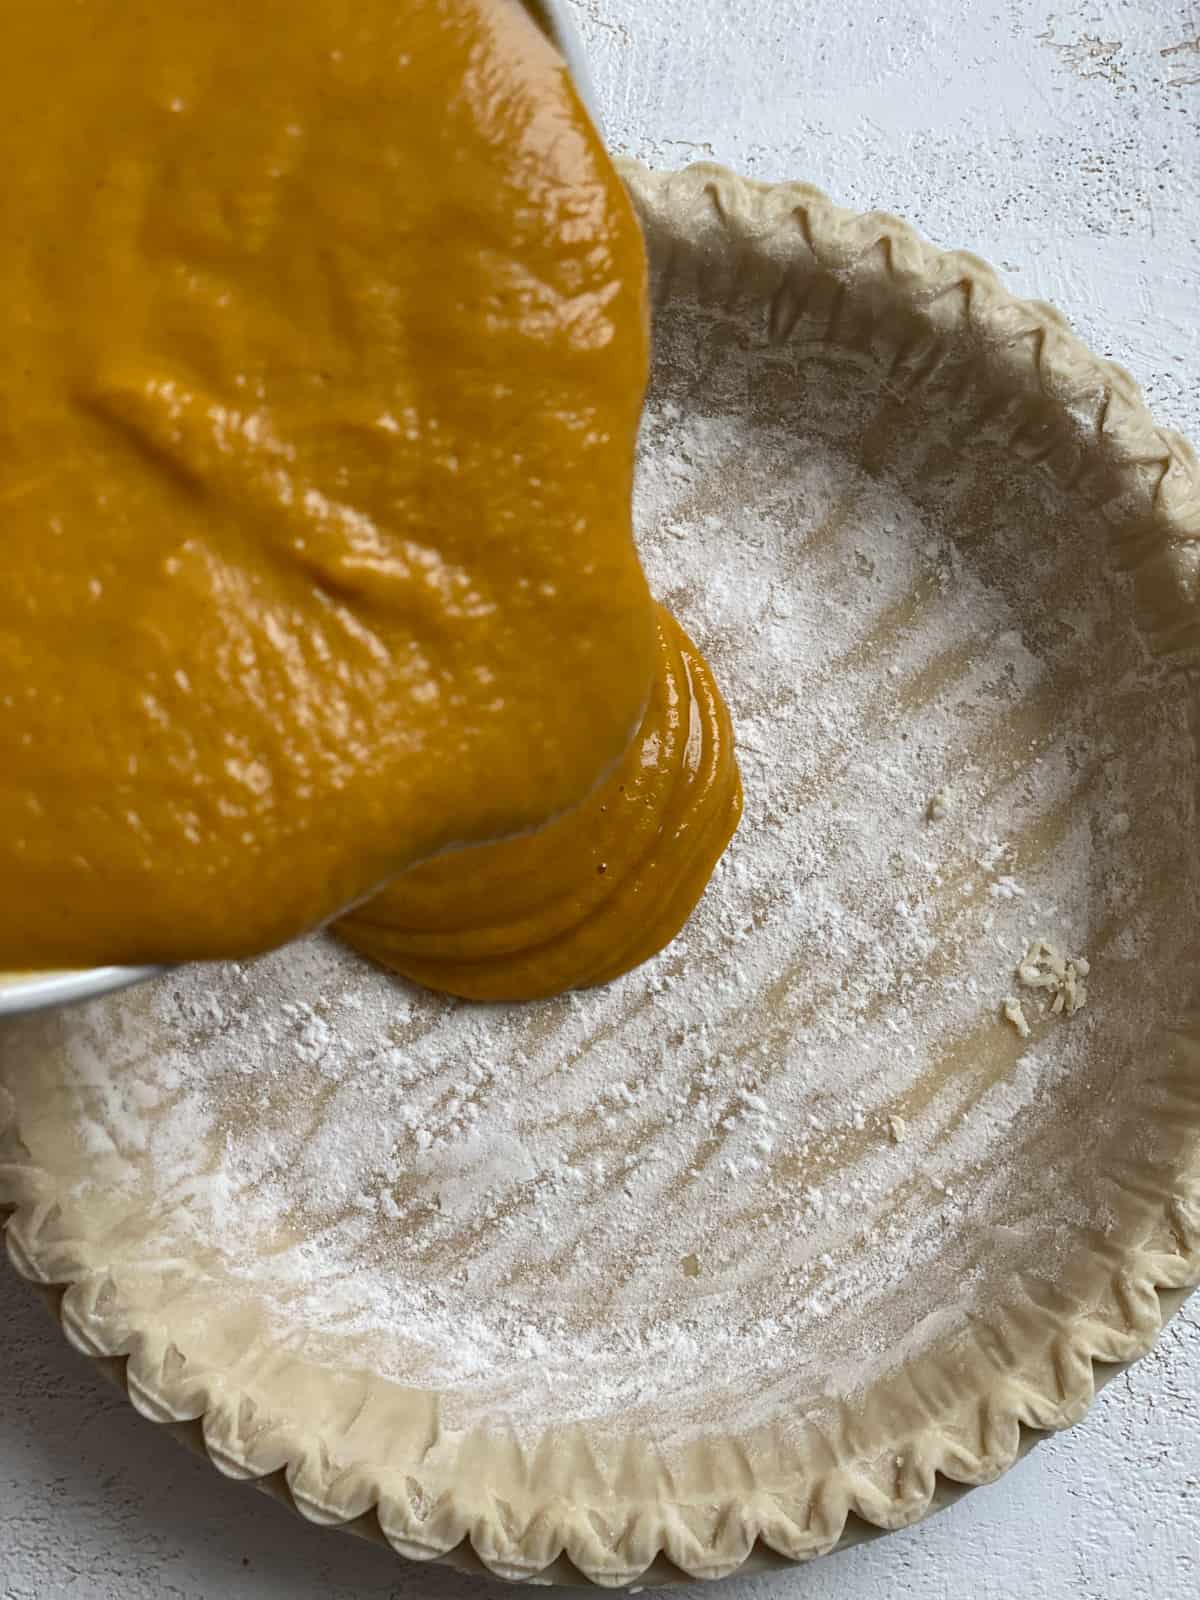 πλάνο διαδικασίας προσθήκης μείγματος κολοκυθόπιτας στην κρούστα πίτας